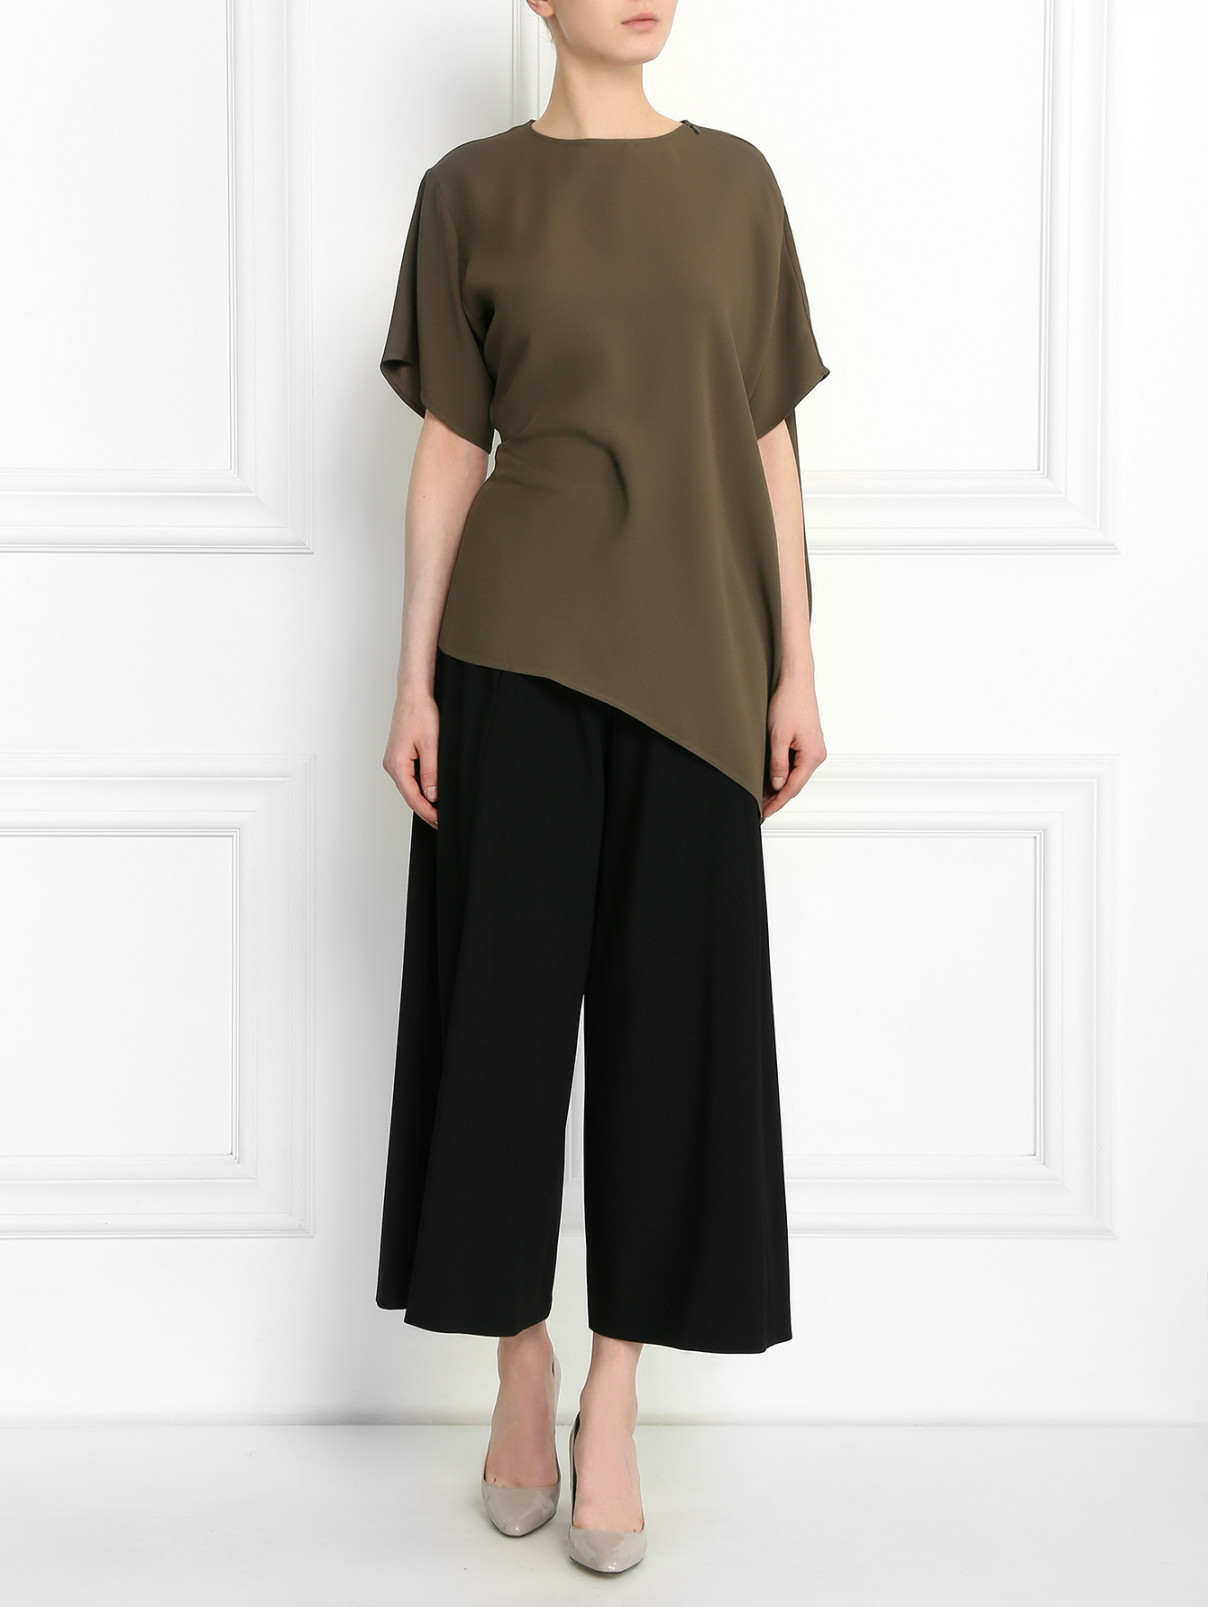 Блуза асимметричного кроя Jean Paul Gaultier  –  Модель Общий вид  – Цвет:  Зеленый